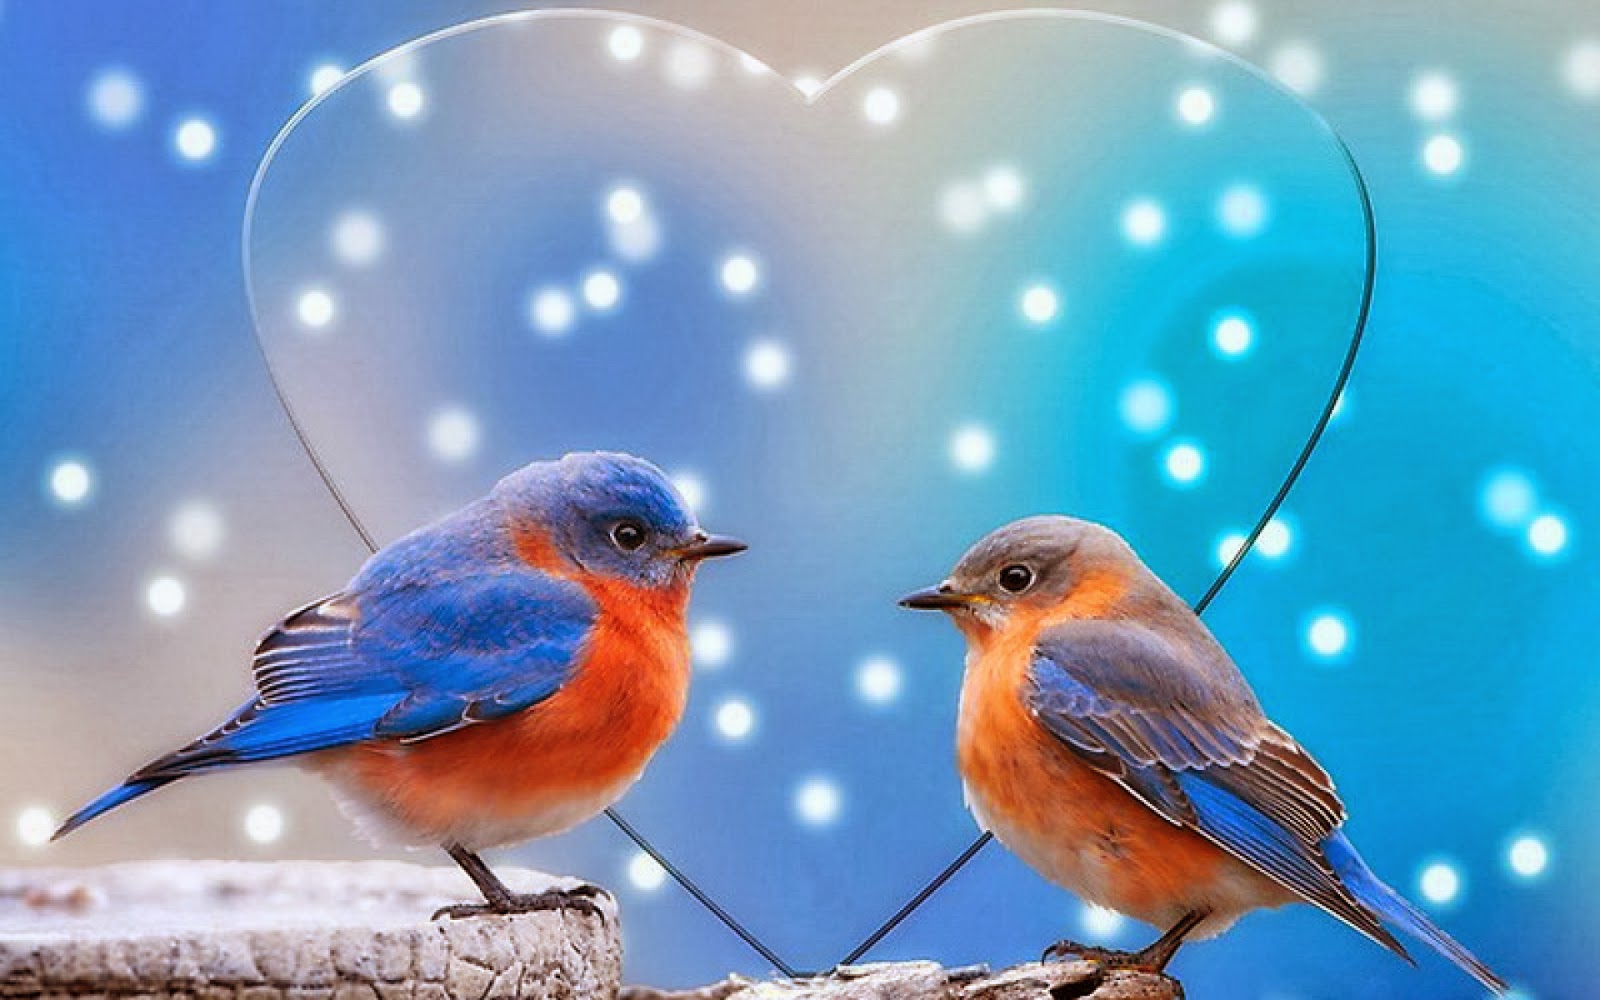 good morning birds wallpaper,bird,eastern bluebird,bluebird,european robin,beak